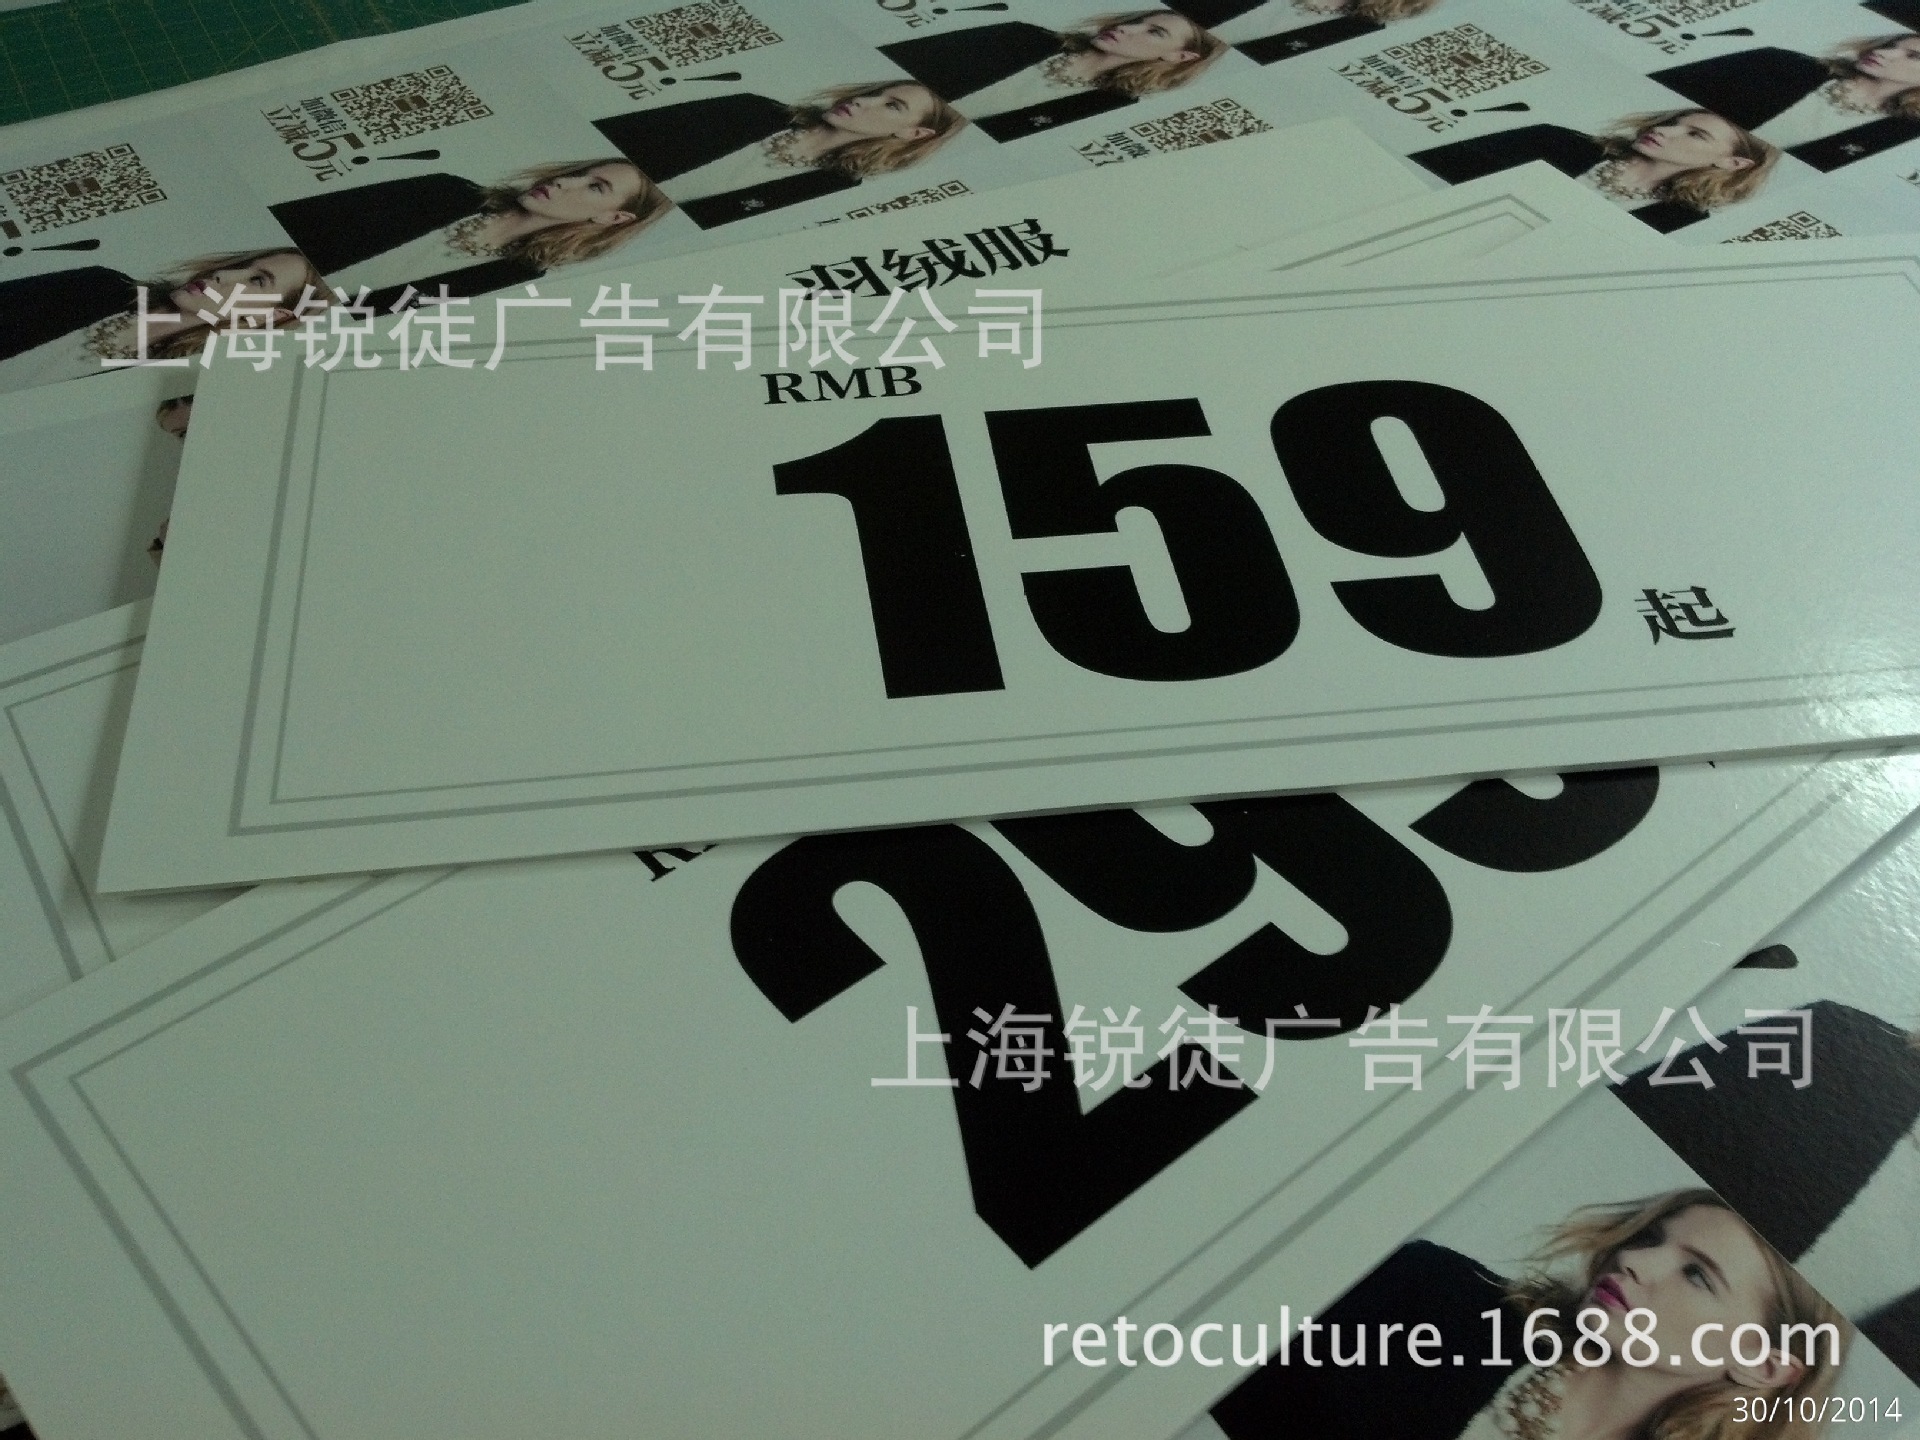 服装店kt板价格牌kt板广告写真制作 上海厂家生产kt板广告牌制作